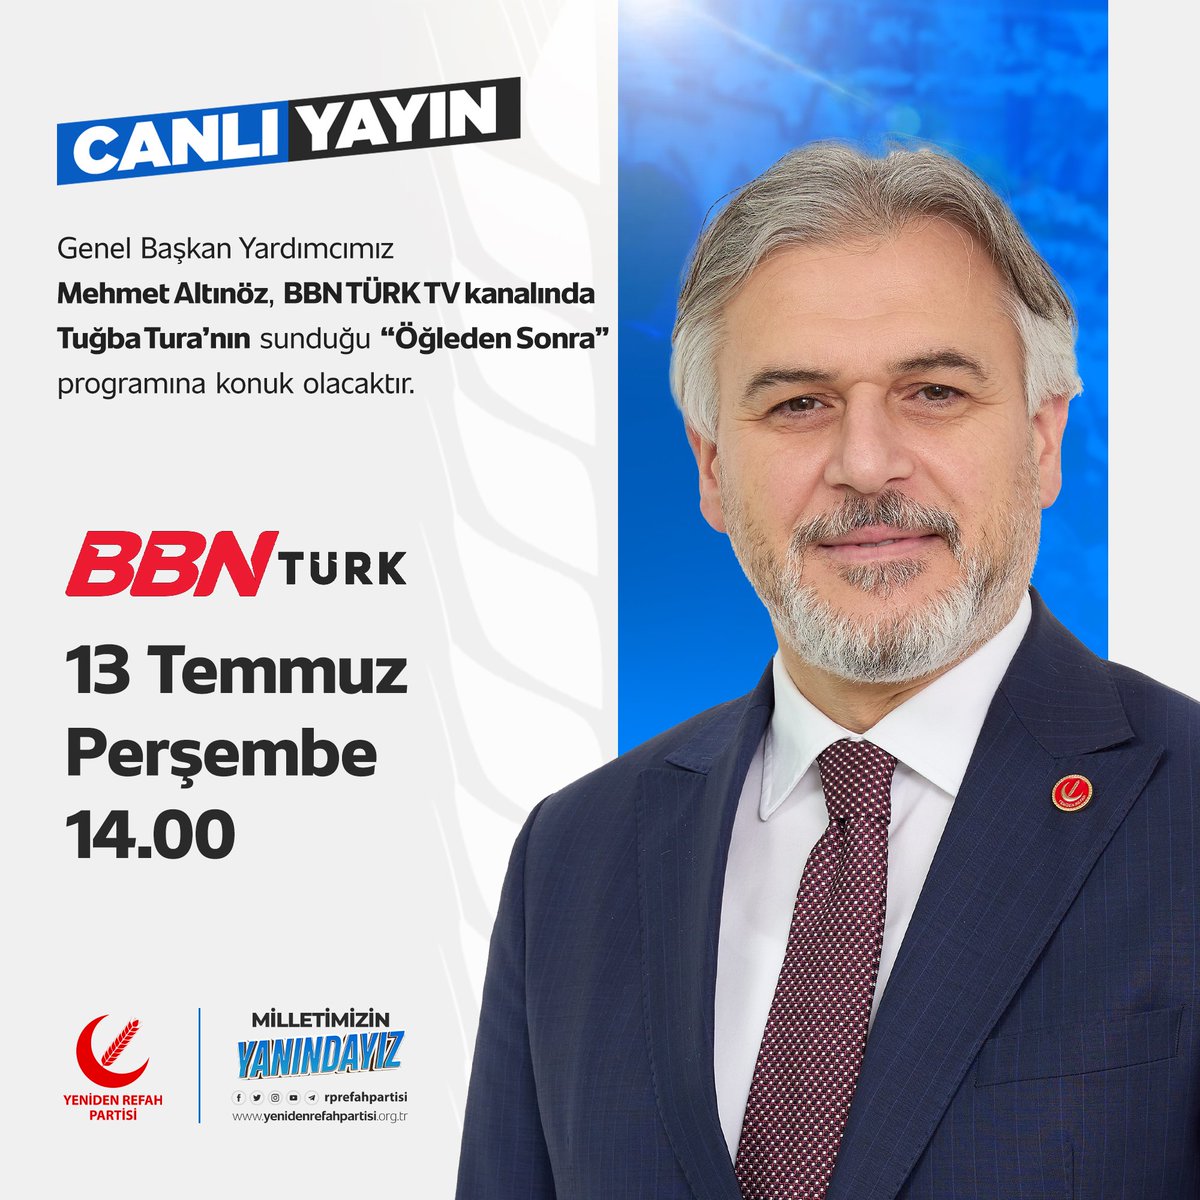 13 Temmuz Perşembe günü saat 14.00'da BBN TÜRK TV'de Tuğba Tura'nın sunduğu 'Öğleden Sonra' programına konuk olacağım. İyi seyirler dilerim.
@bbnturktv